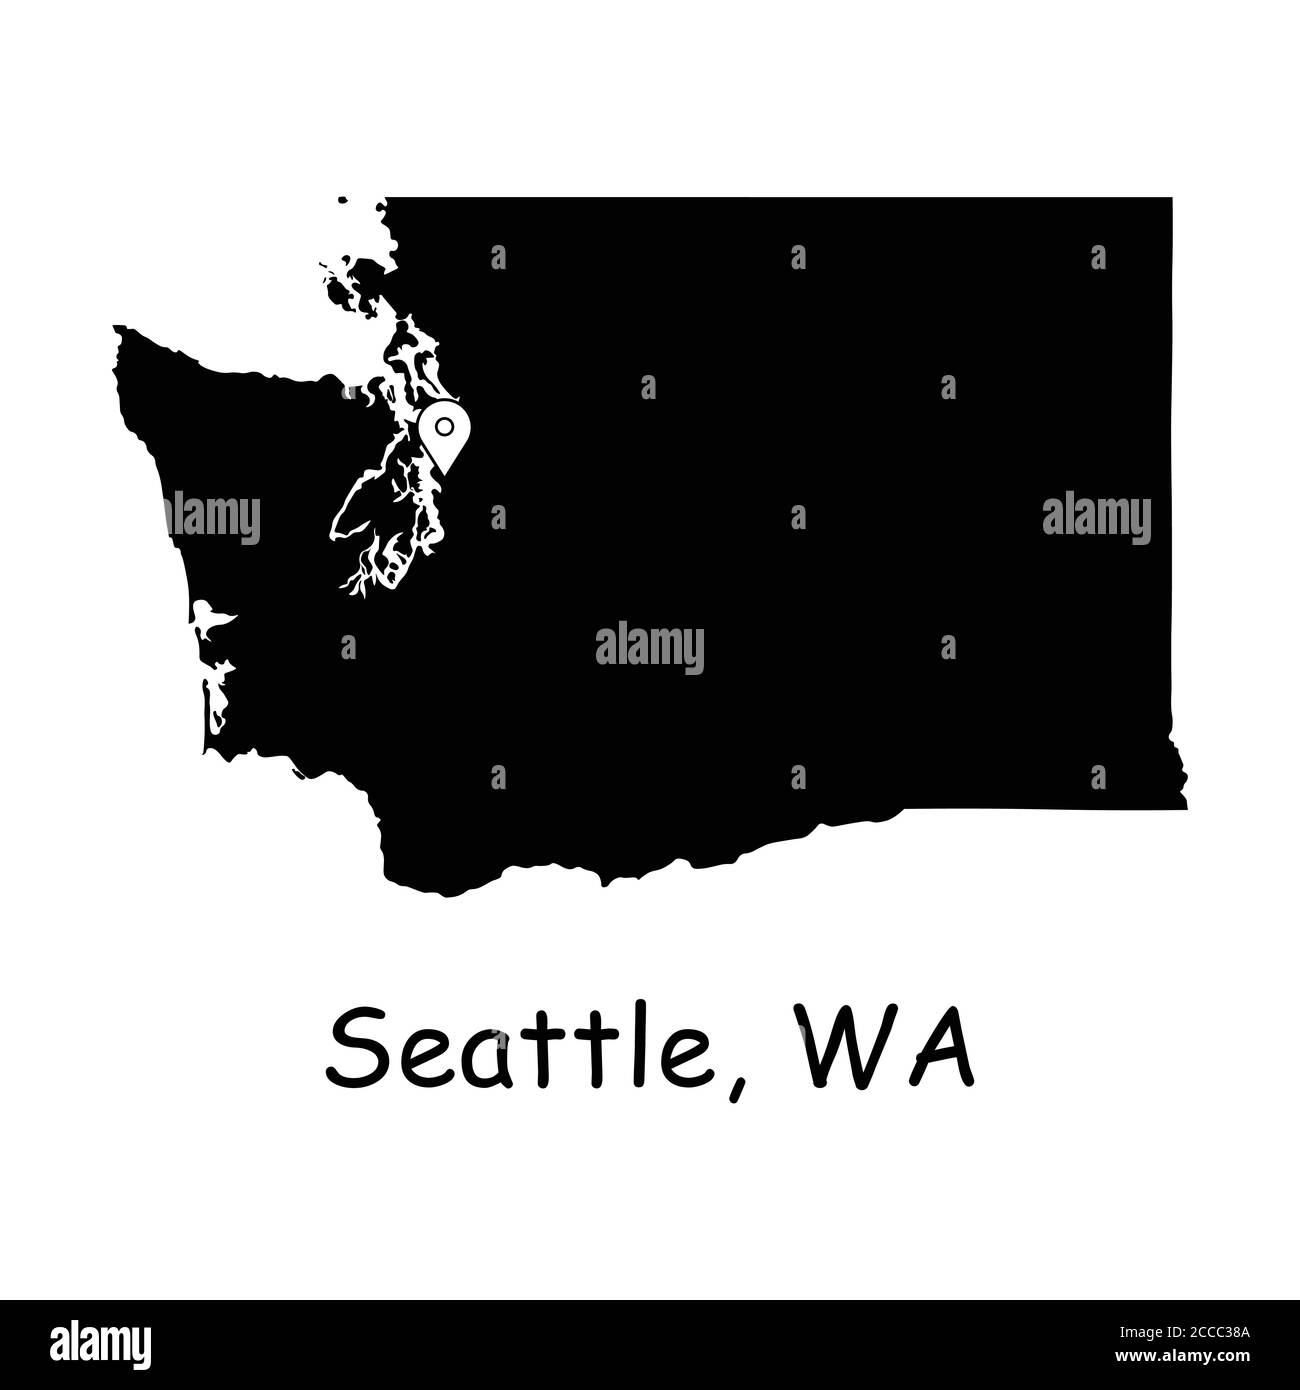 Seattle sulla Washington state Map. Mappa dettagliata dello stato di Washington con pin sulla città di Seattle. Mappa vettoriale silhouette nera isolata su sfondo bianco. Illustrazione Vettoriale